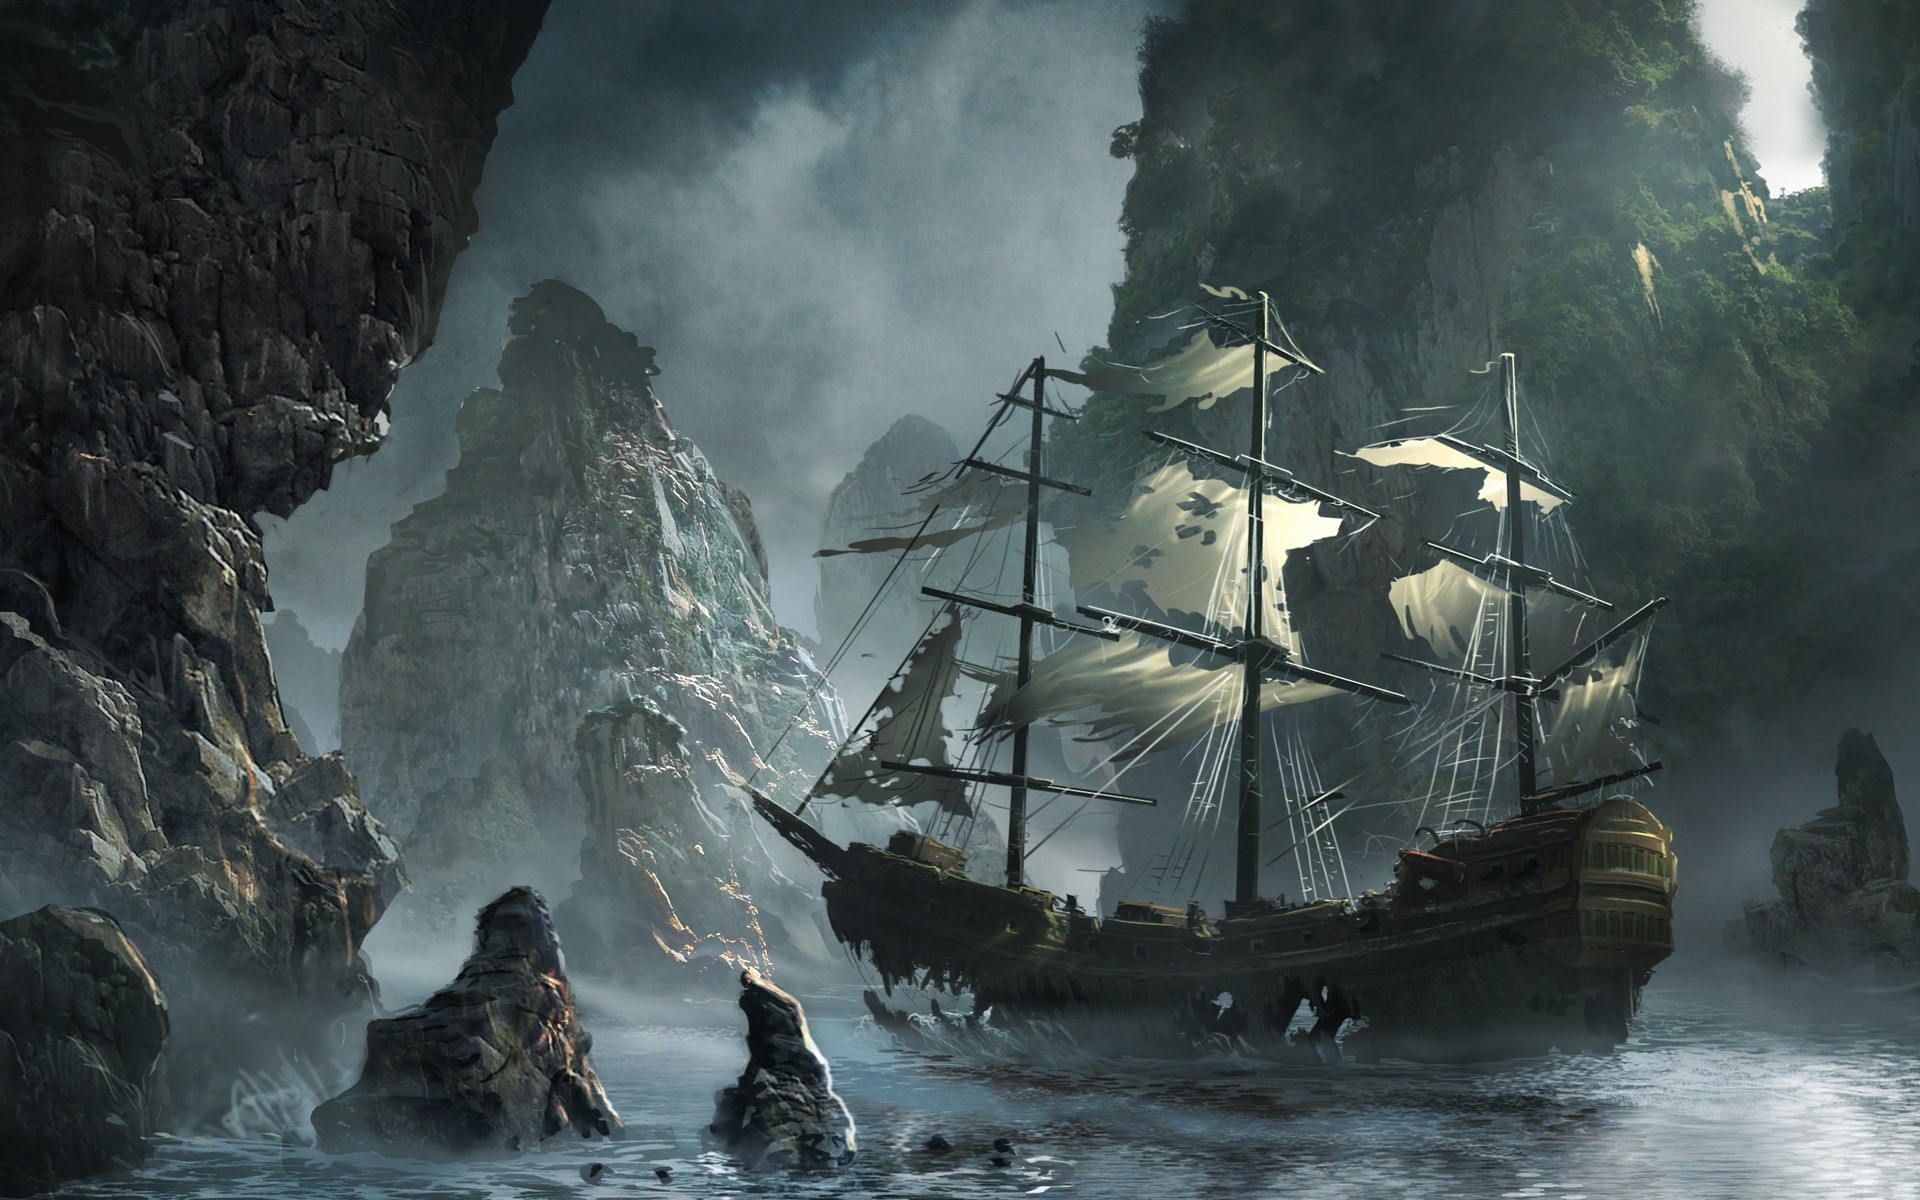 1001-ships-rocks-illustrations-artwork-sail-ship-abandoned-bay-sails-w